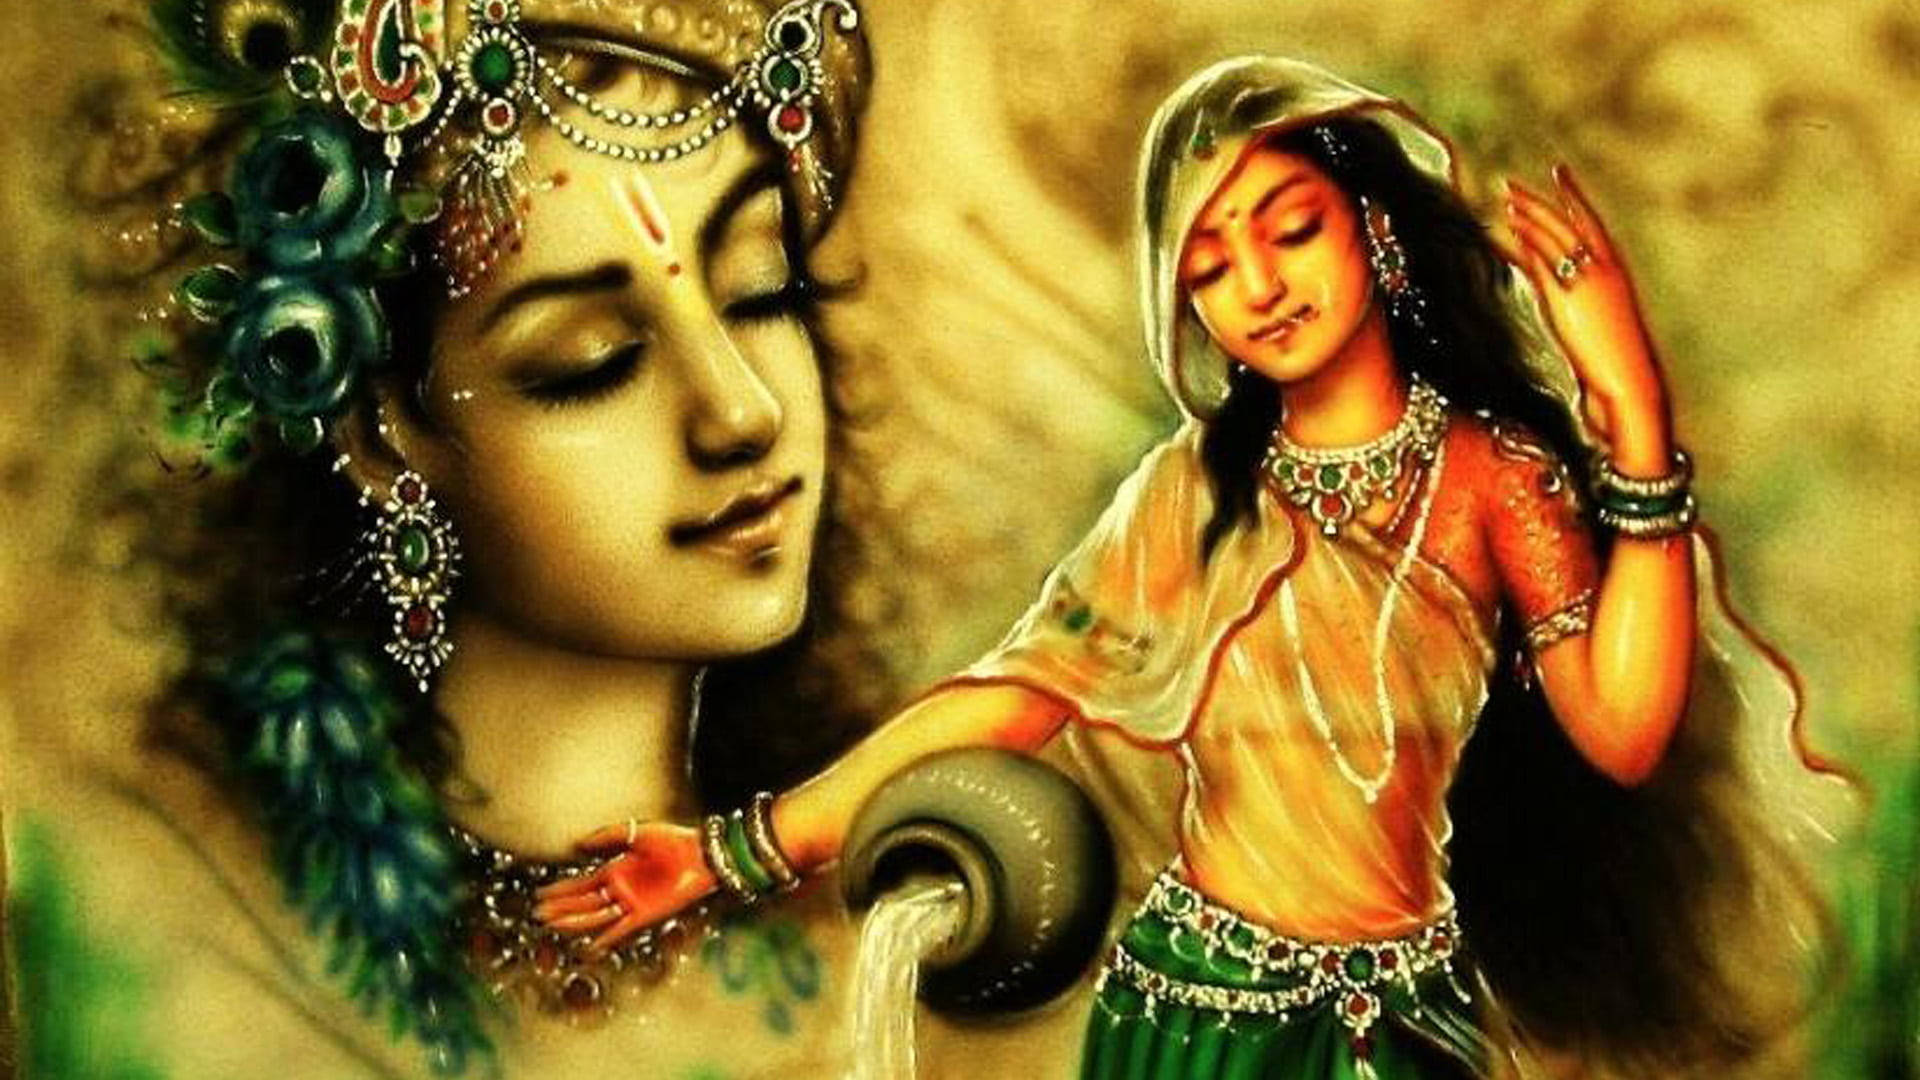 Shri Krishna And Radha Painting Background